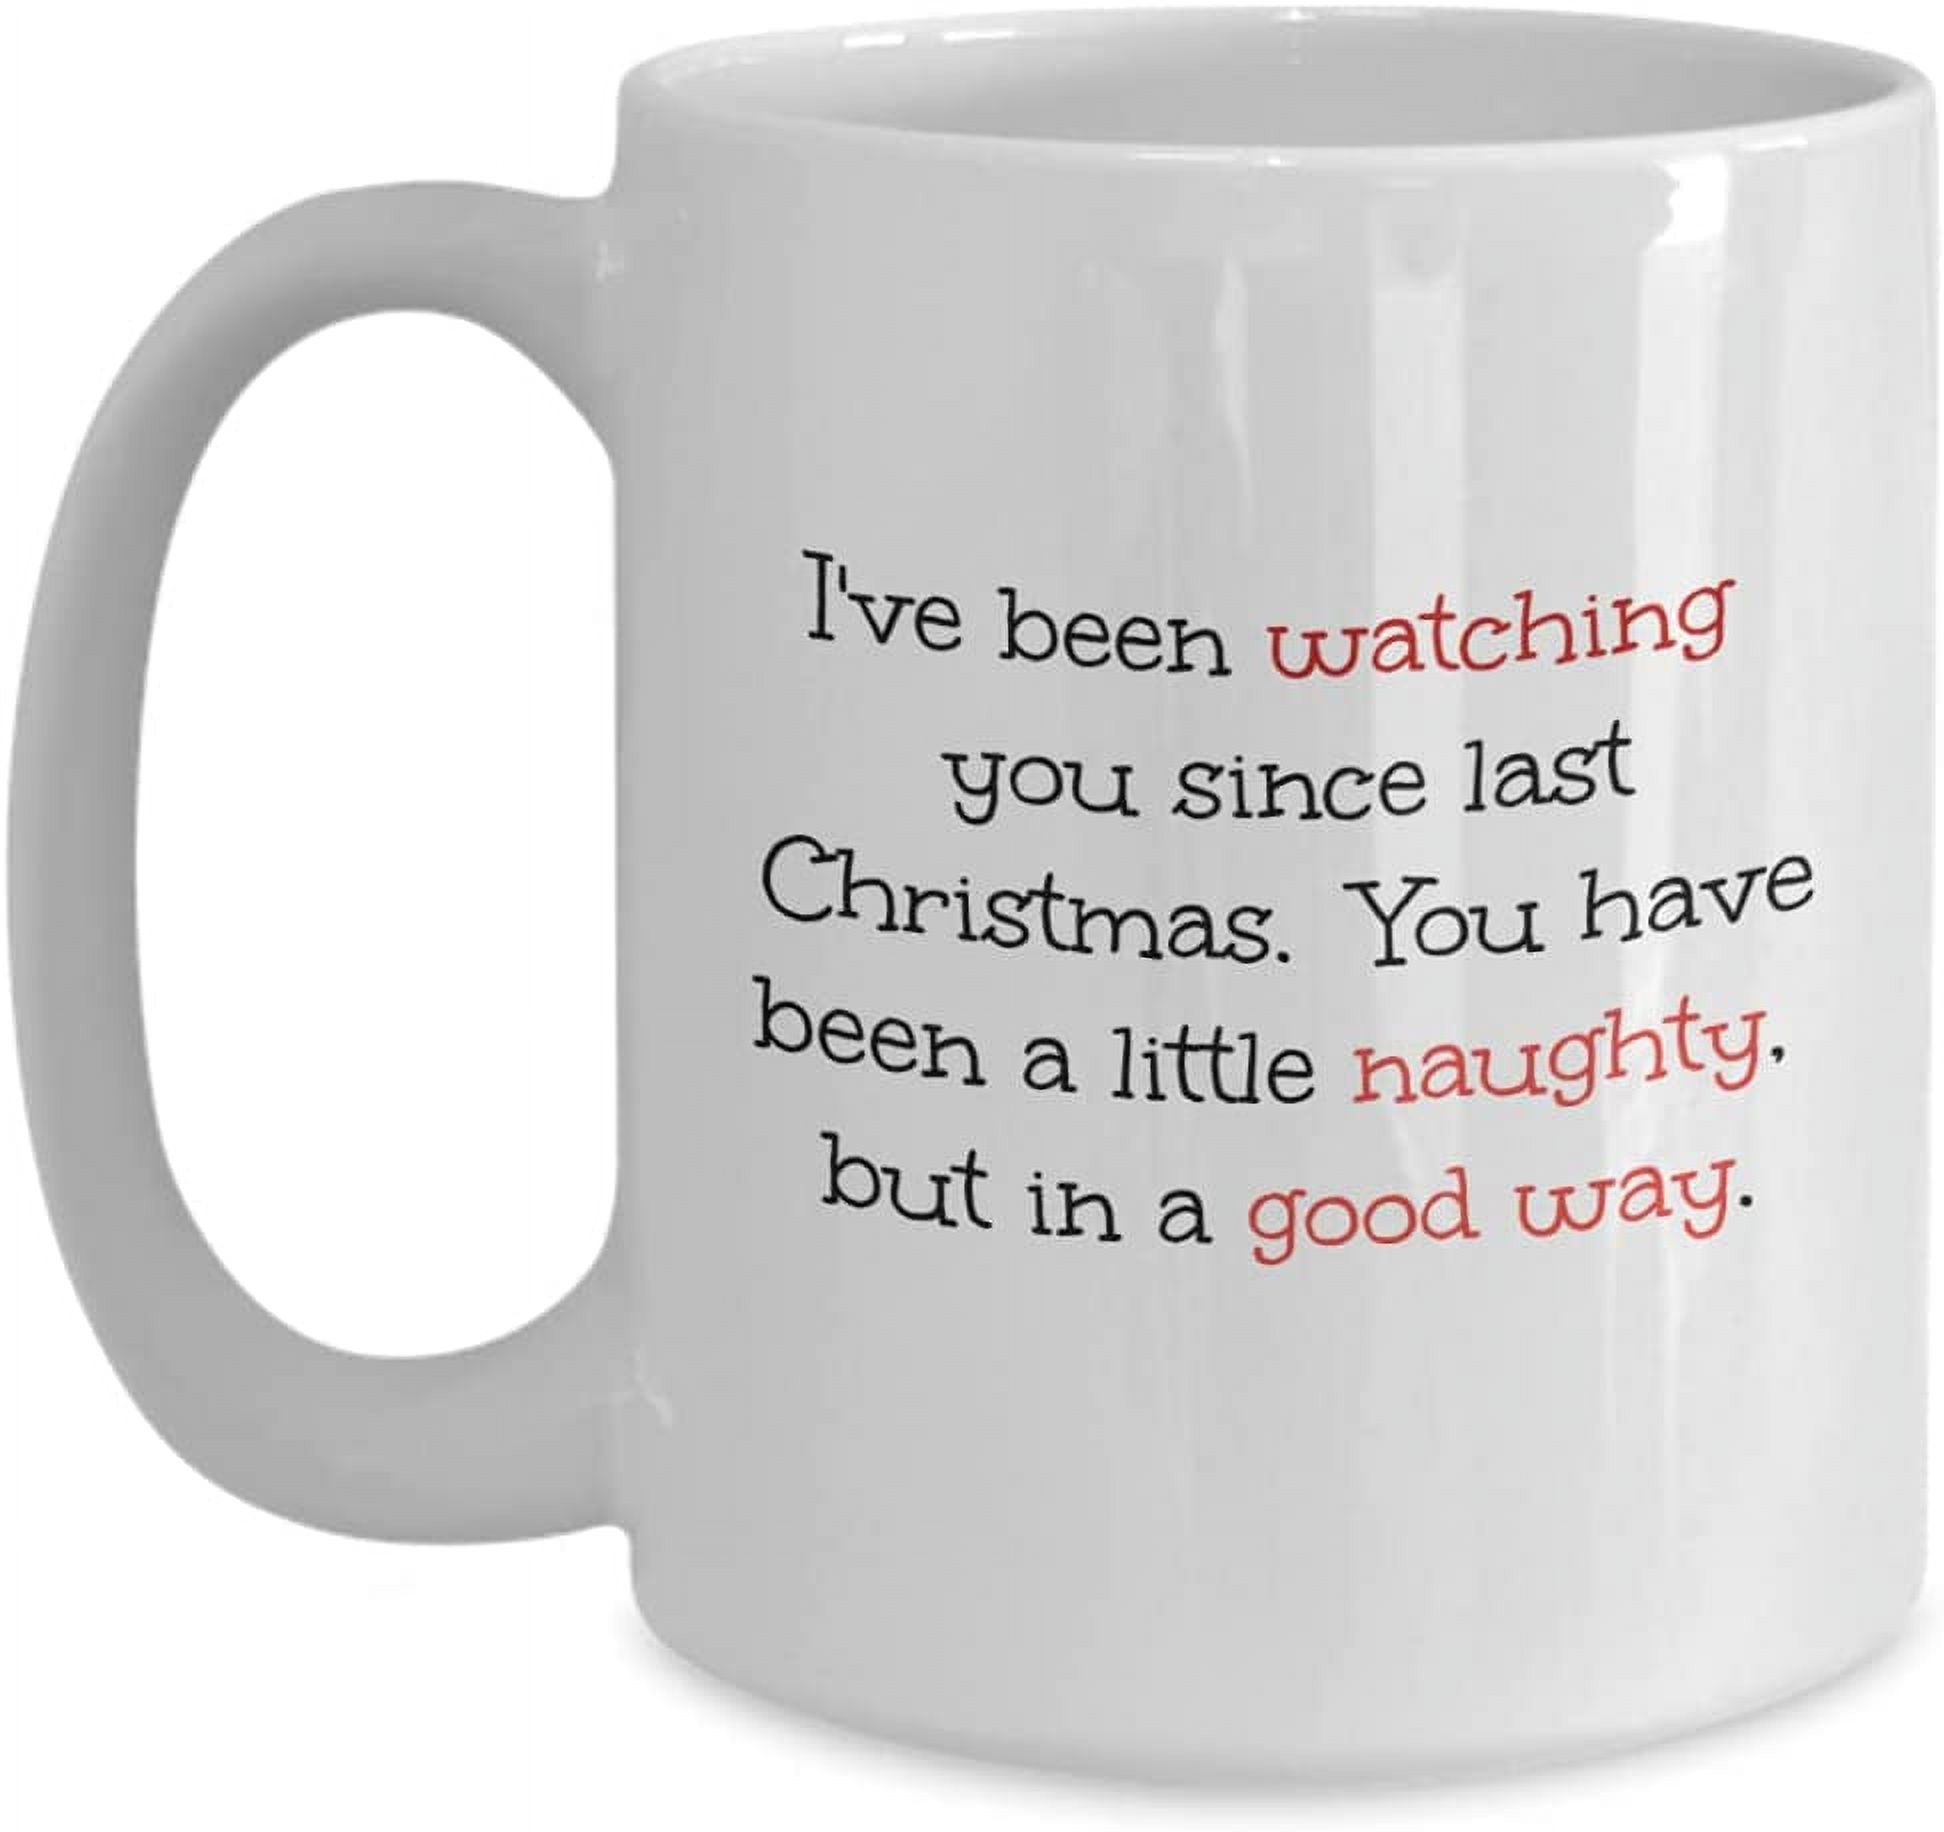 Christmas Mug, Naught in A Good Way Coffee Mug, Christmas Gifts for Girlfriend, Christmas Presents for Boyfriend, Funny Mug from Santa, Tea or Coffee